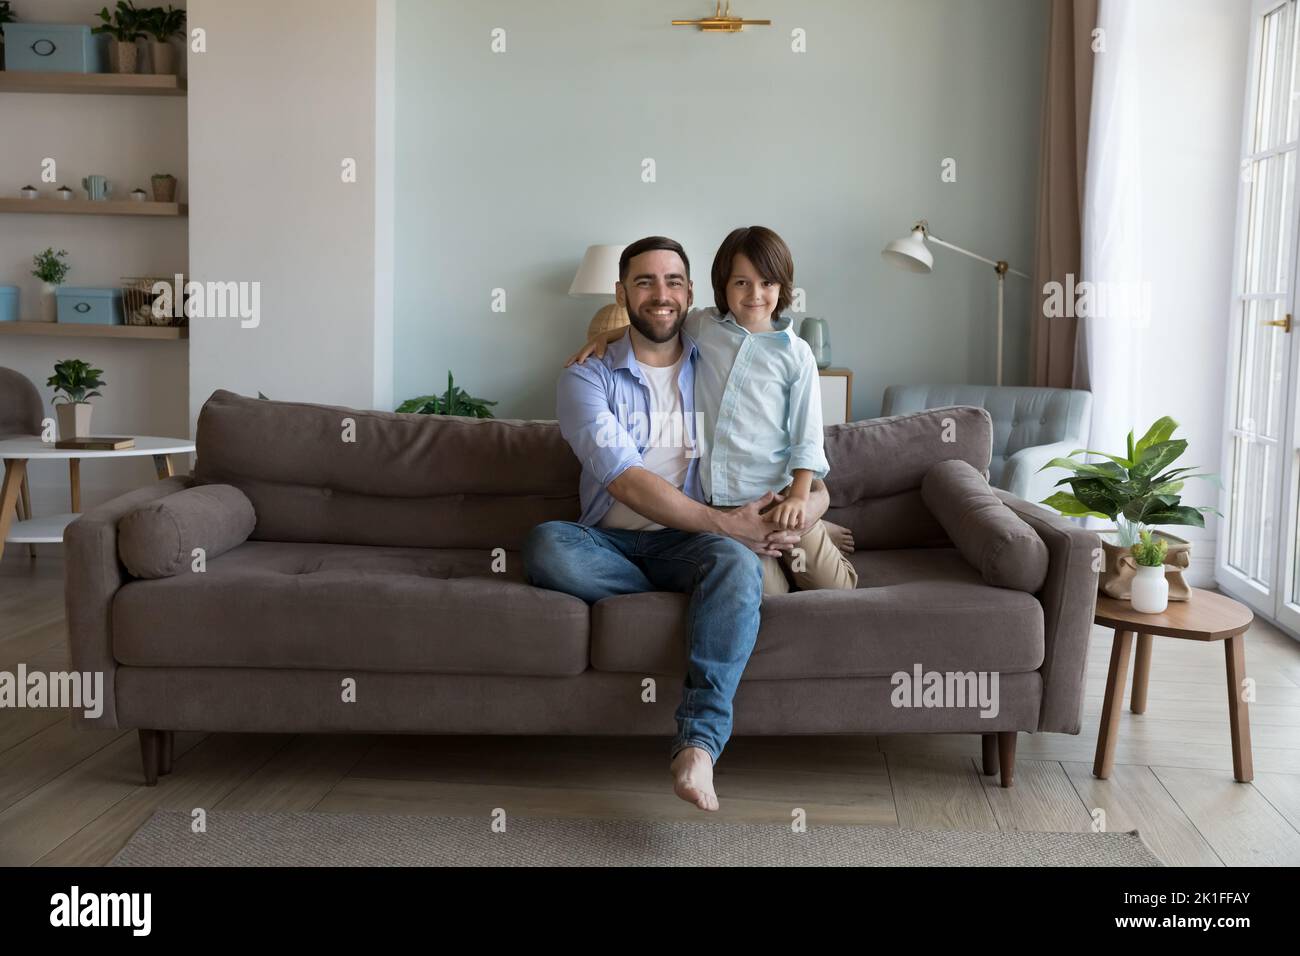 Glücklicher hübscher Vater und kleiner Sohn, der auf dem Sofa sitzt Stockfoto